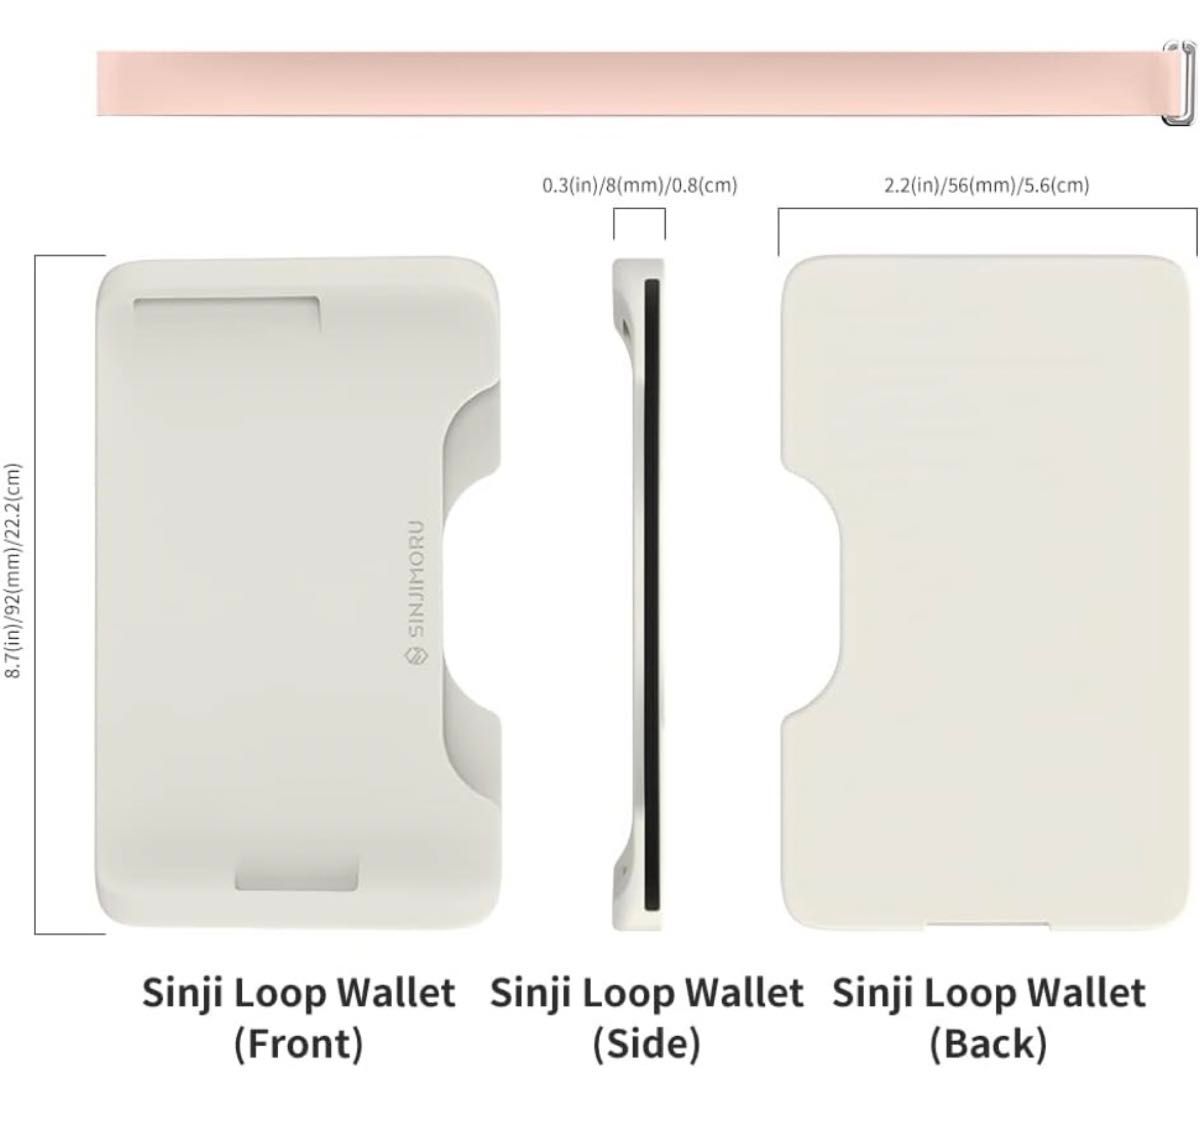 【ラスト】スマホ カードケース ミニ財布 ミニポケット 脱着可能 ホワイト グレー